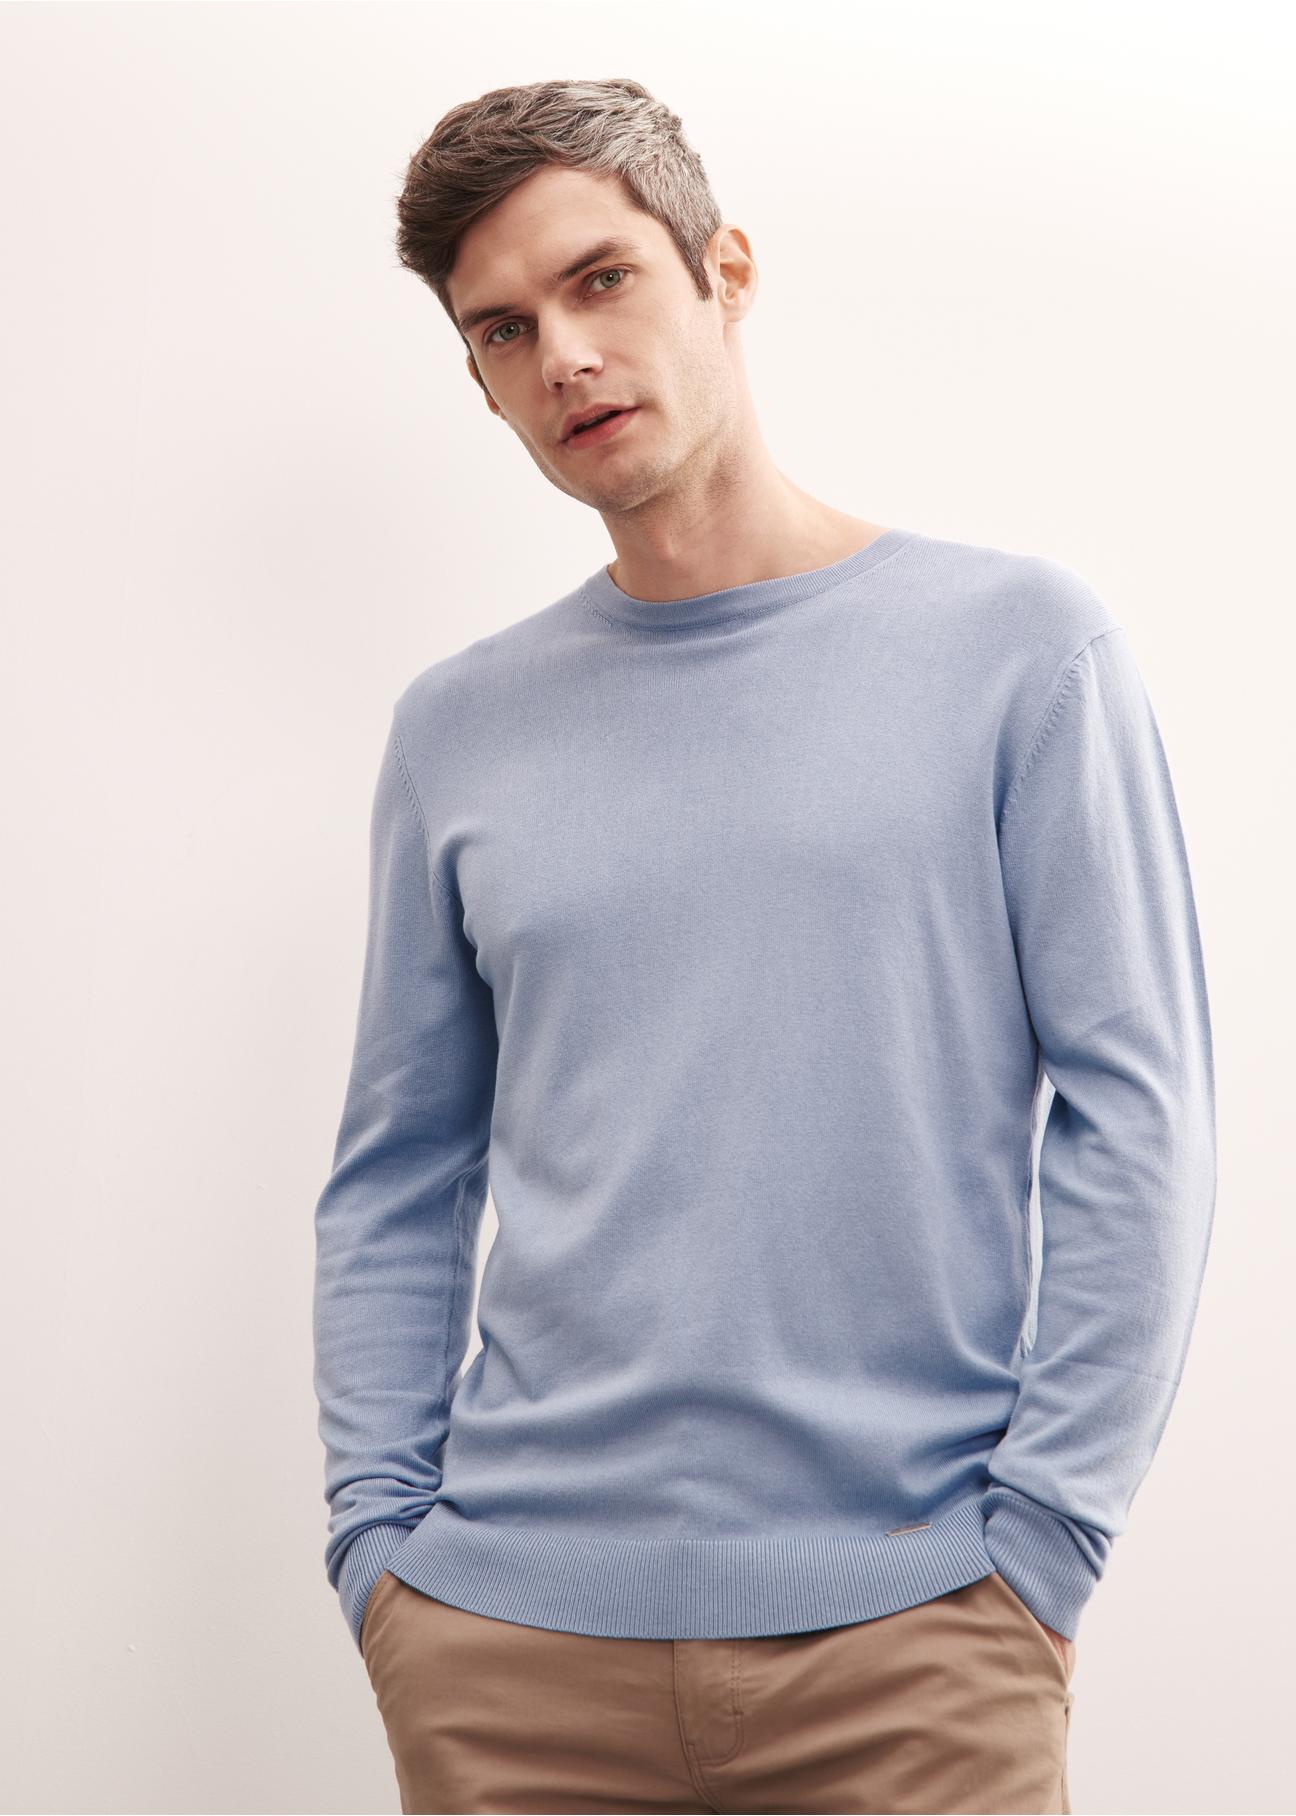 Niebieski sweter męski basic SWEMT-0127-61(W23)